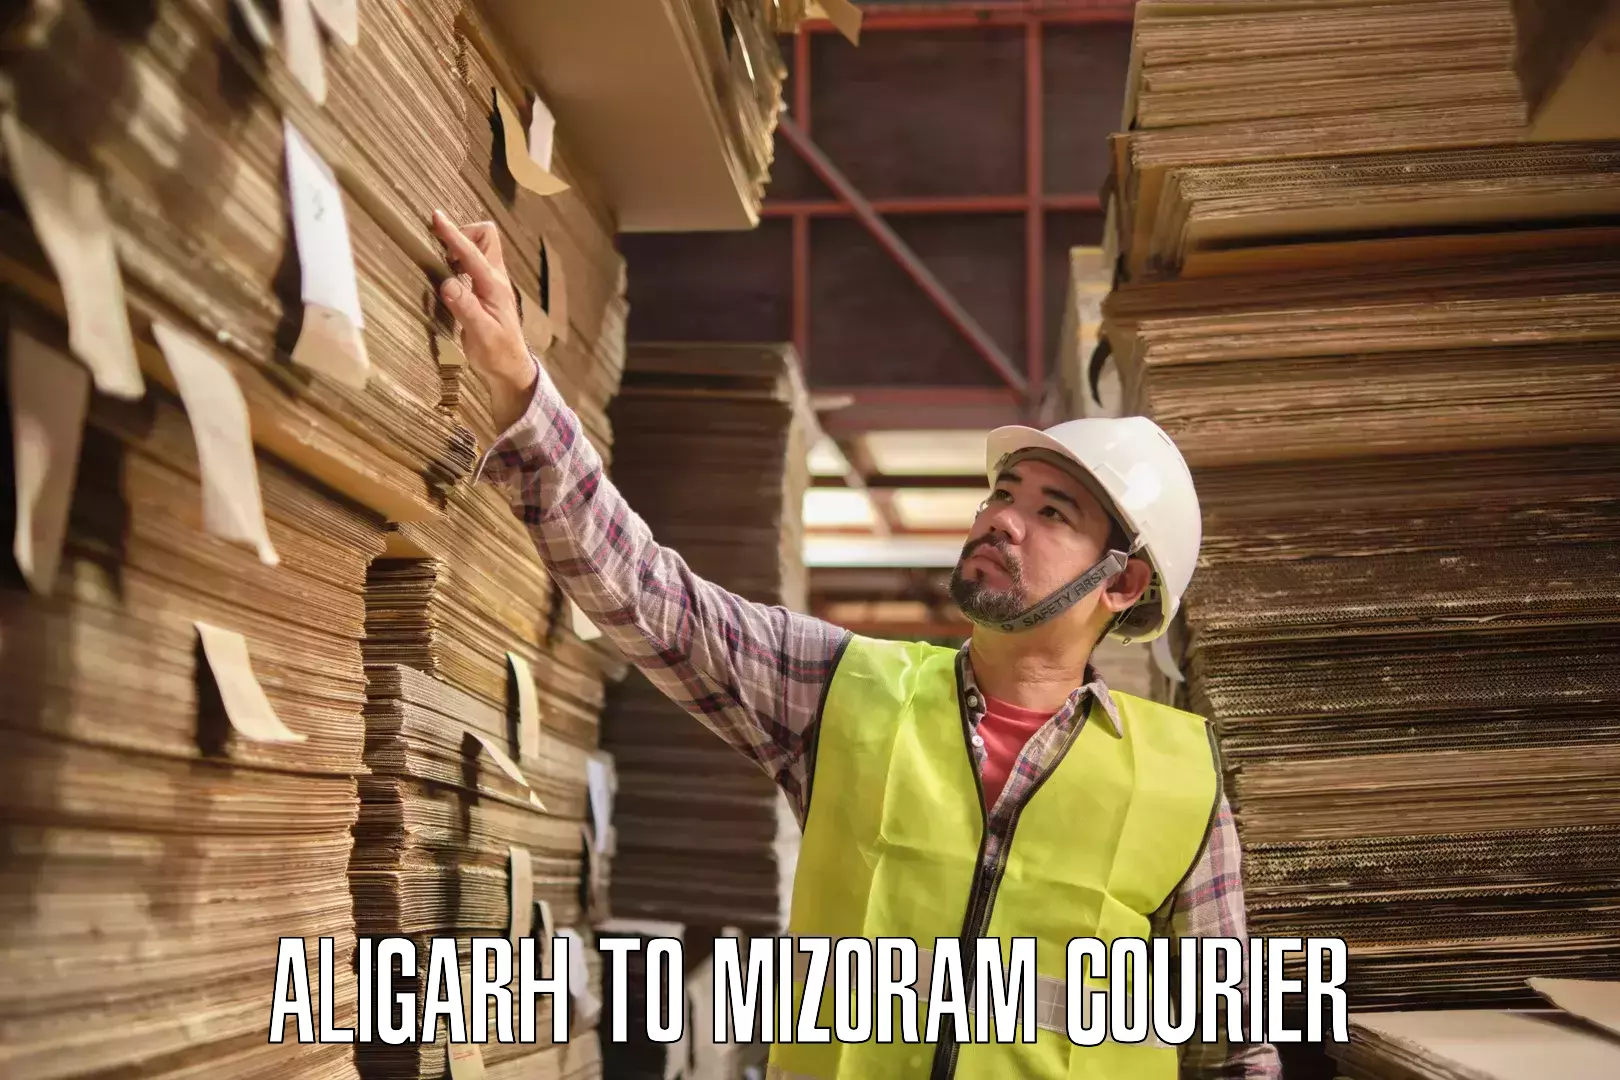 Customer-centric shipping Aligarh to Mizoram